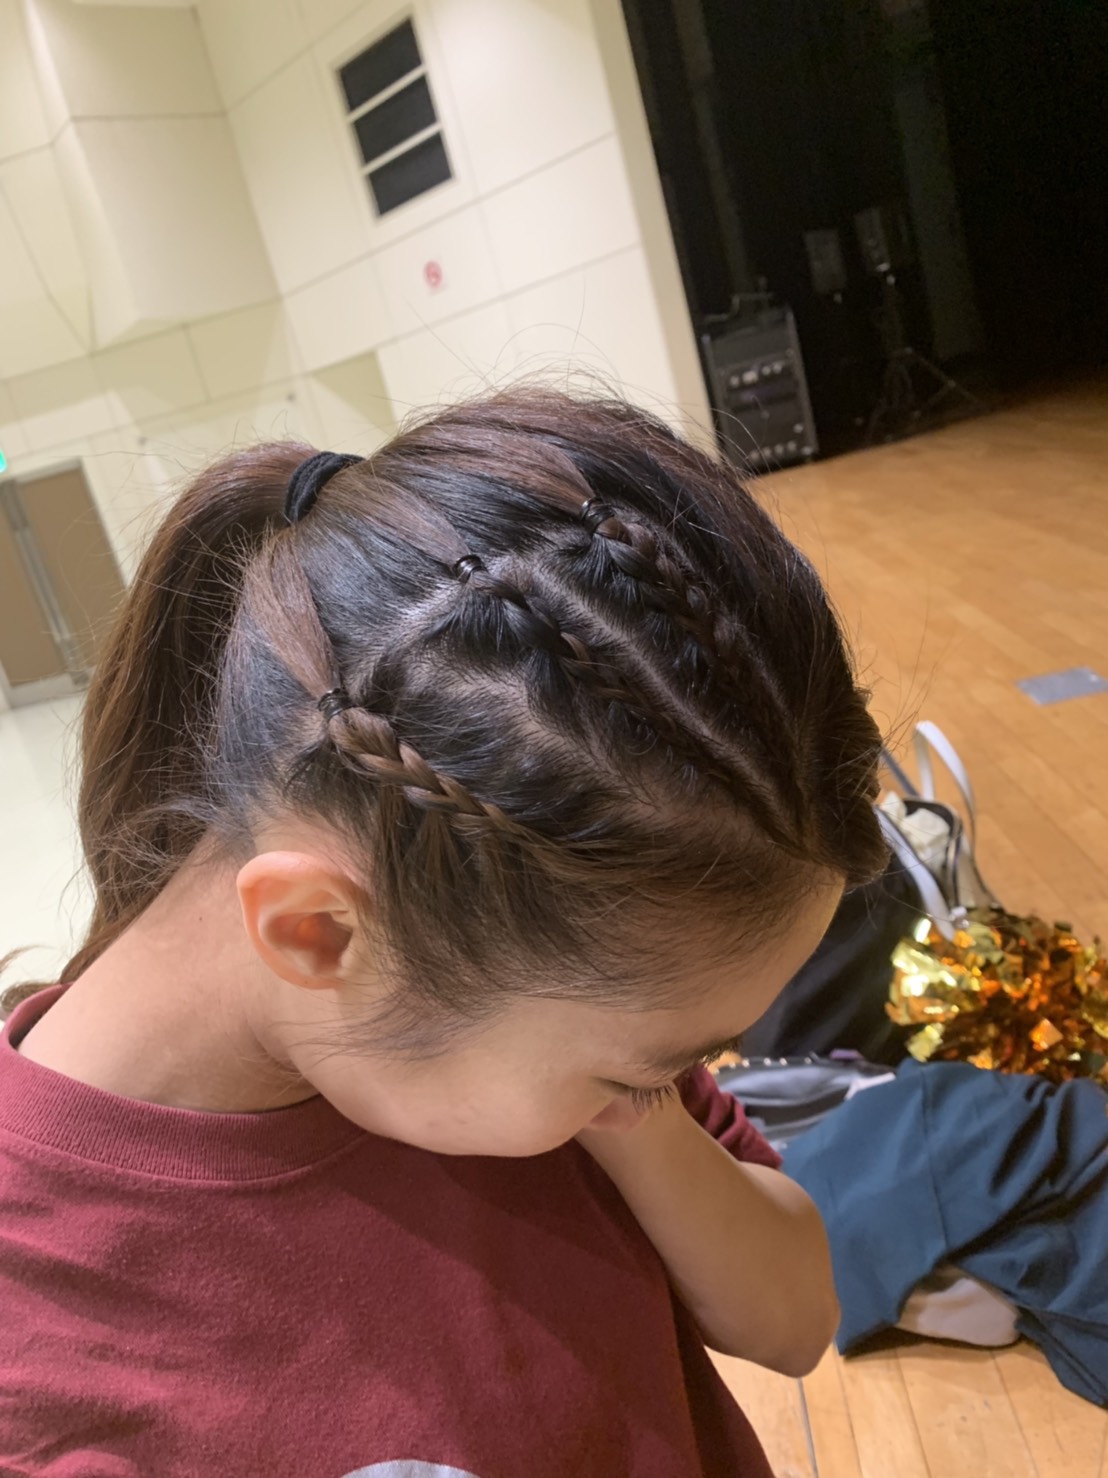 キッズダンスにオススメ 毛糸 エクステを使った髪型 ヘアアレンジ をご紹介 Gravis 神奈川 東京で人気のチア キッズチアダンススクール